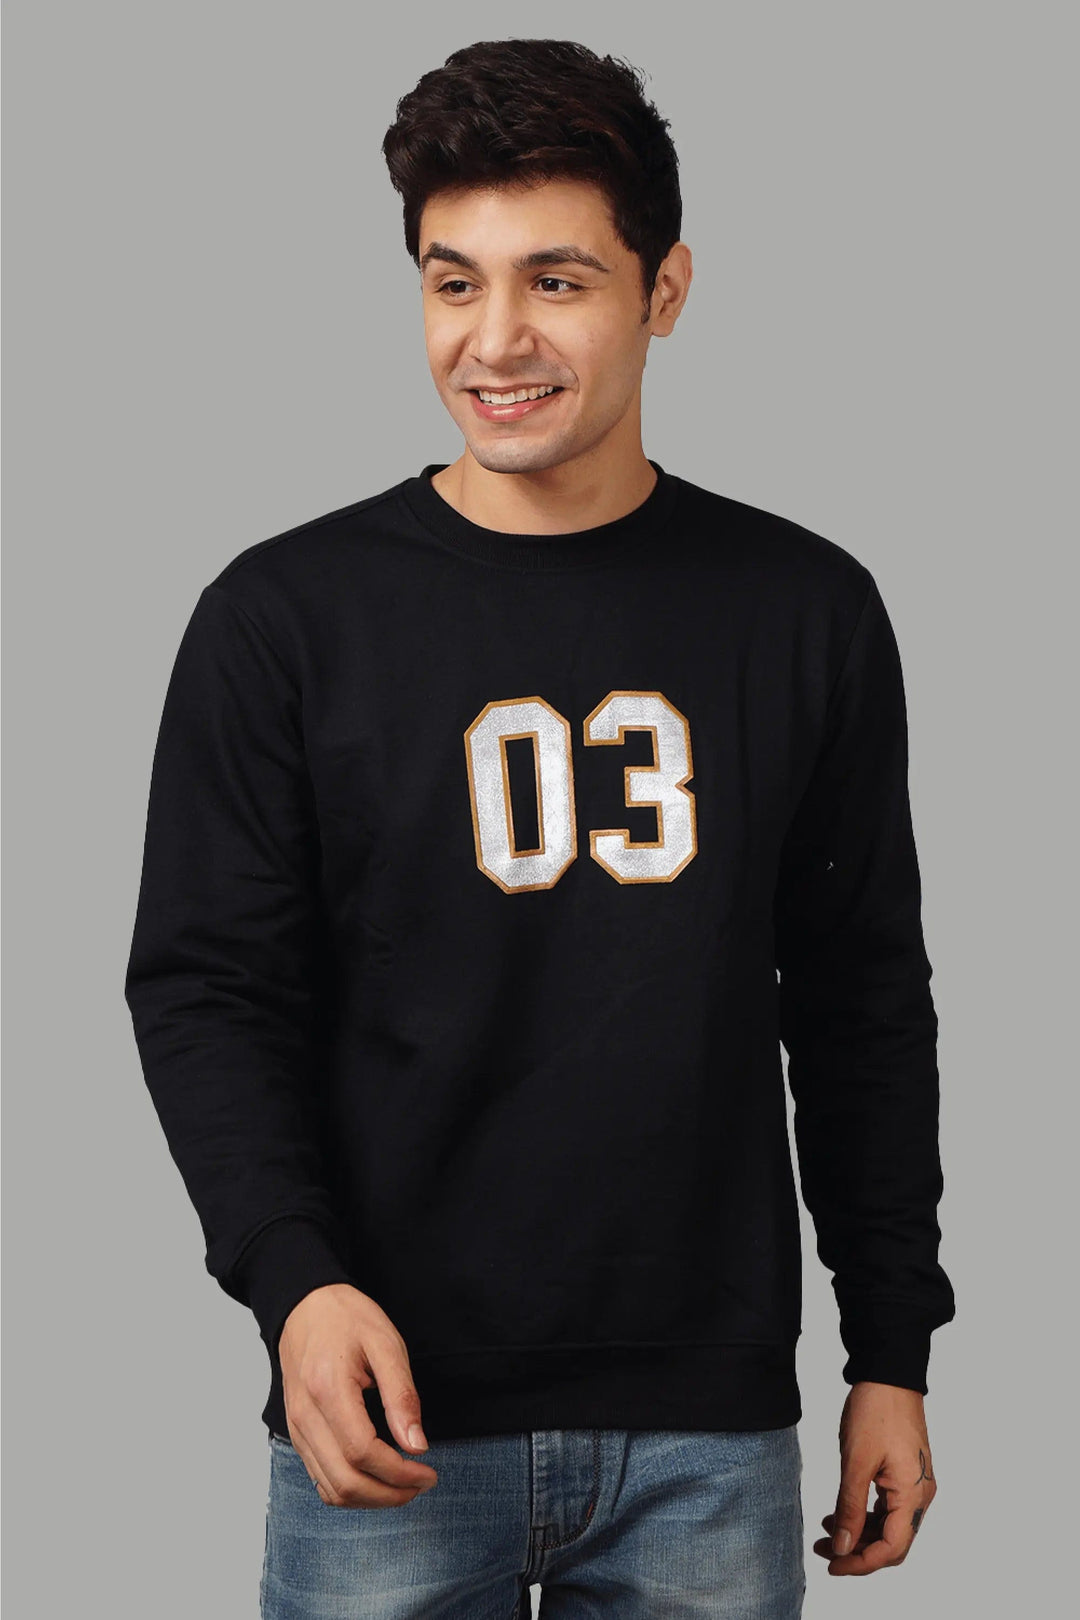 Regular Fit Printed Black Sweatshirt For Men - Peplos Jeans 